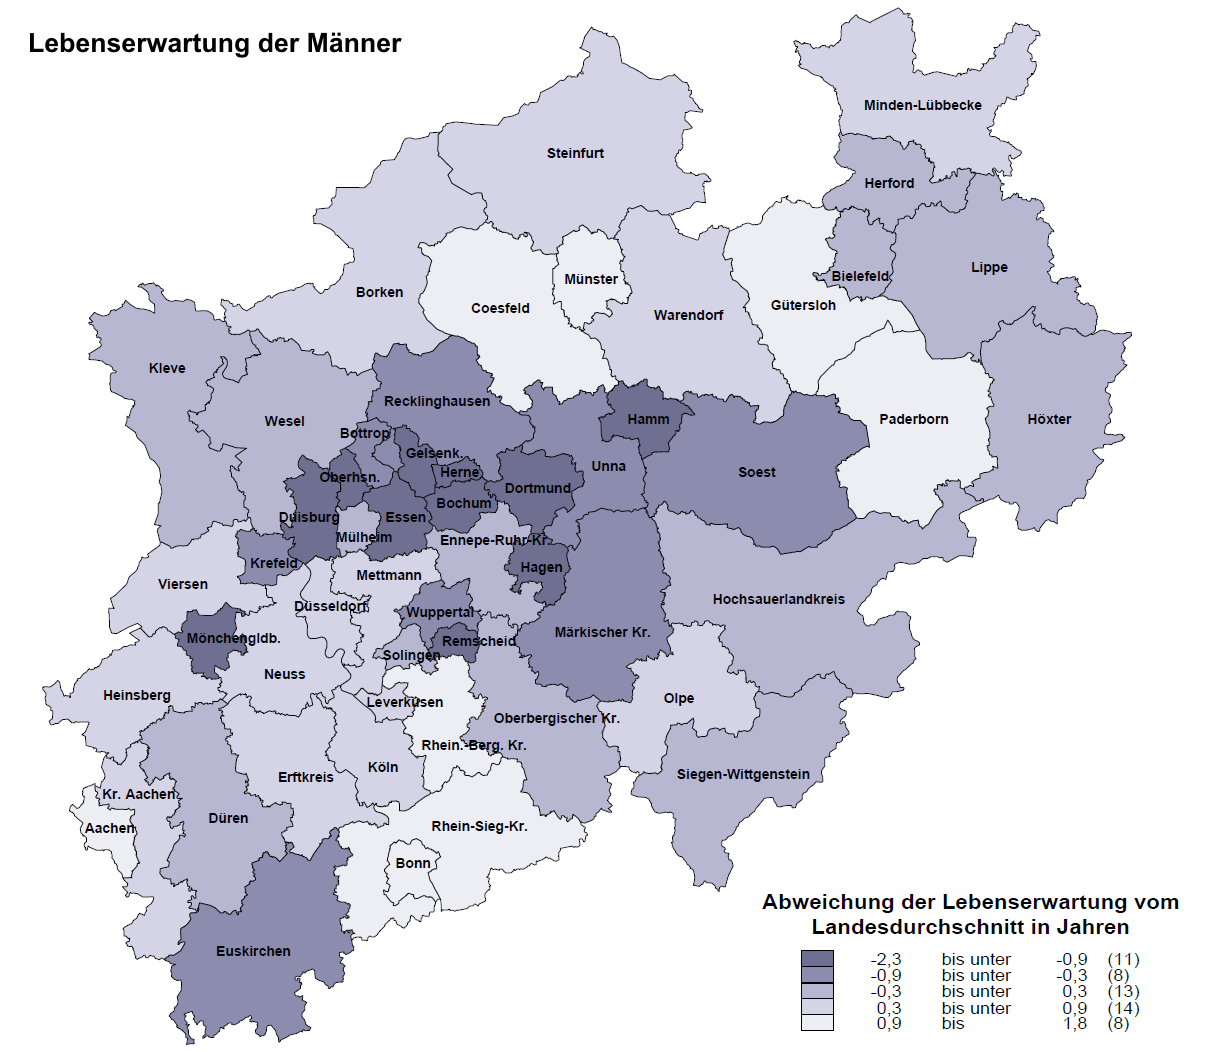 NRW-Kreiskarte zur Lebenserwartung von Männern, 3-Jahres-Mittelwert der Jahre 2013 bis 2015